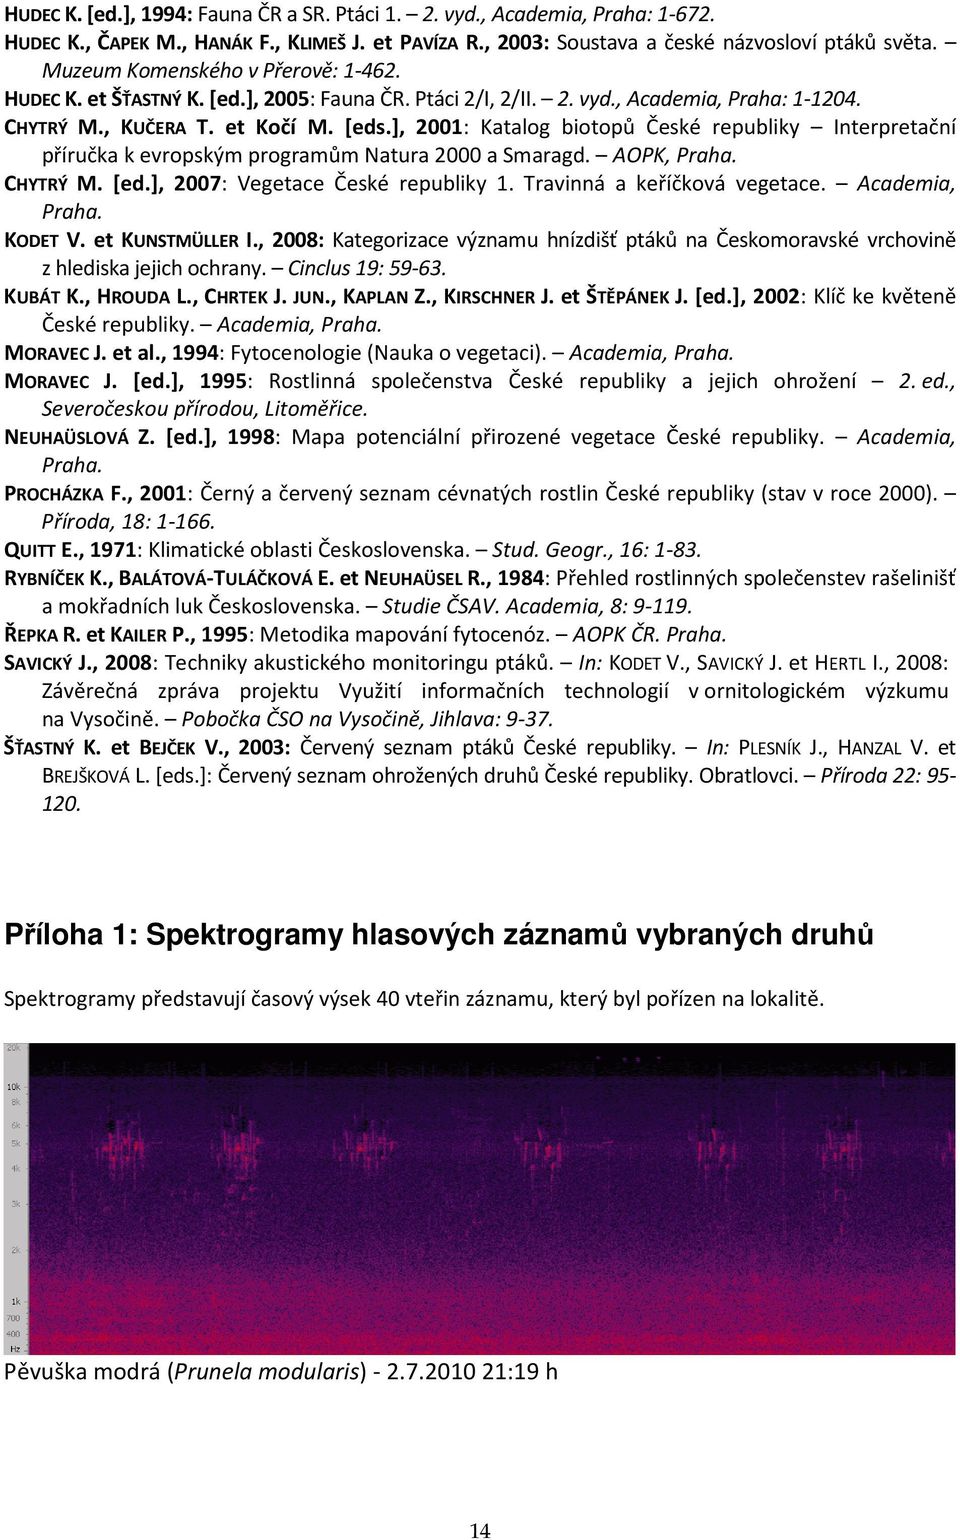 ], 2001: Katalog biotopů České republiky Interpretační příručka k evropským programům Natura 2000 a Smaragd. AOPK, Praha. CHYTRÝ M. [ed.], 2007: Vegetace České republiky 1.